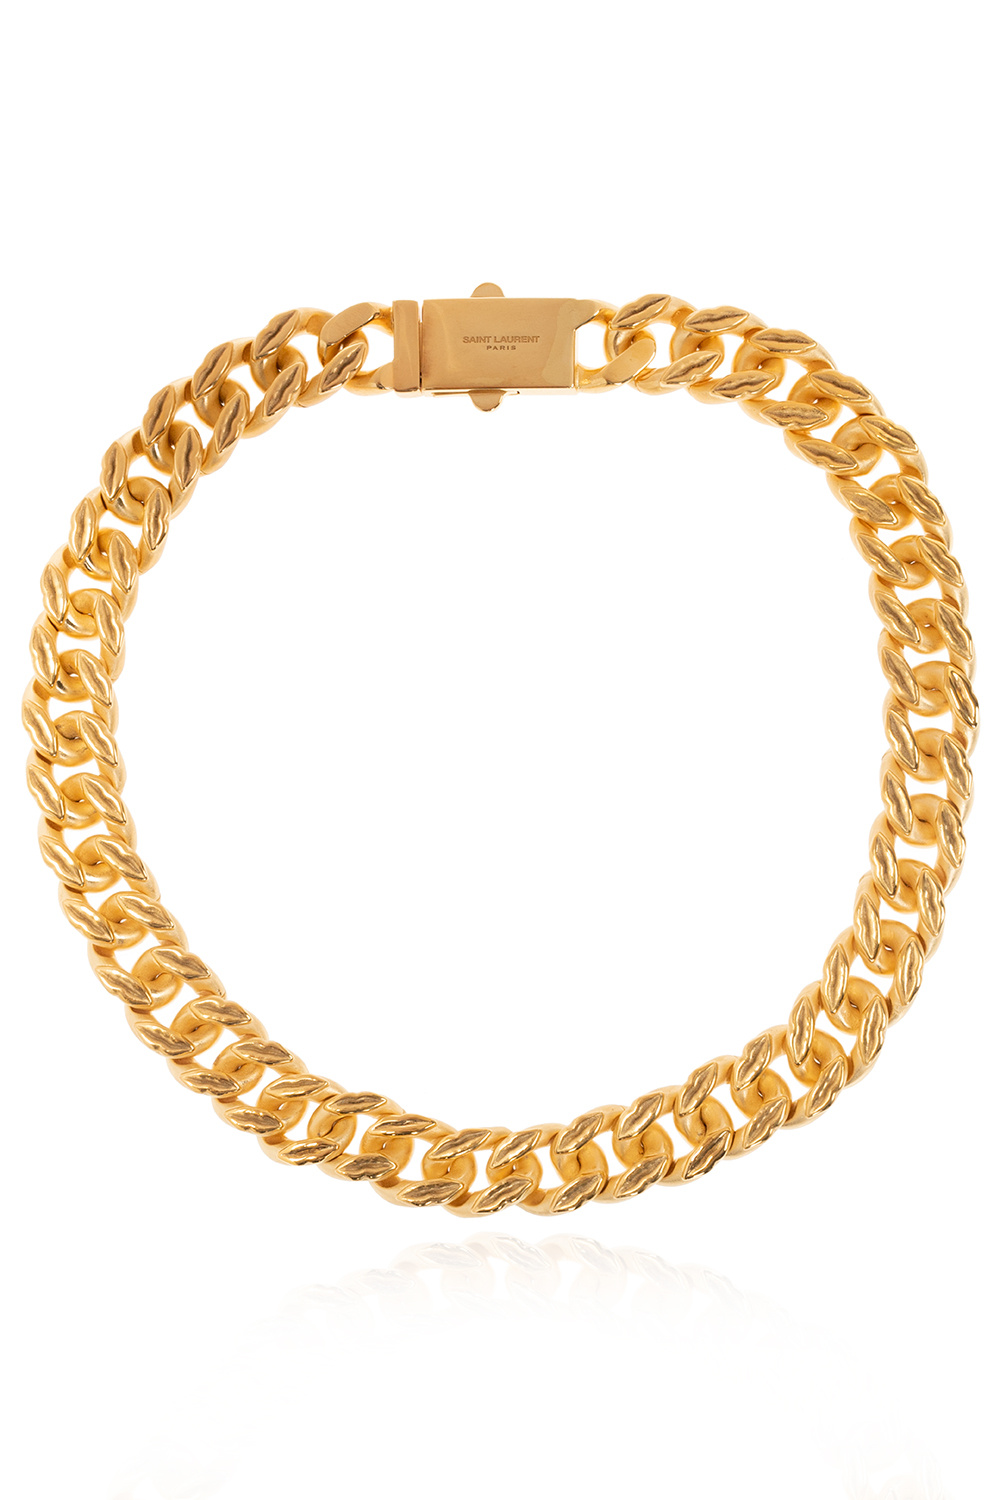 Saint Laurent Necklace | Women's Jewelery | IetpShops